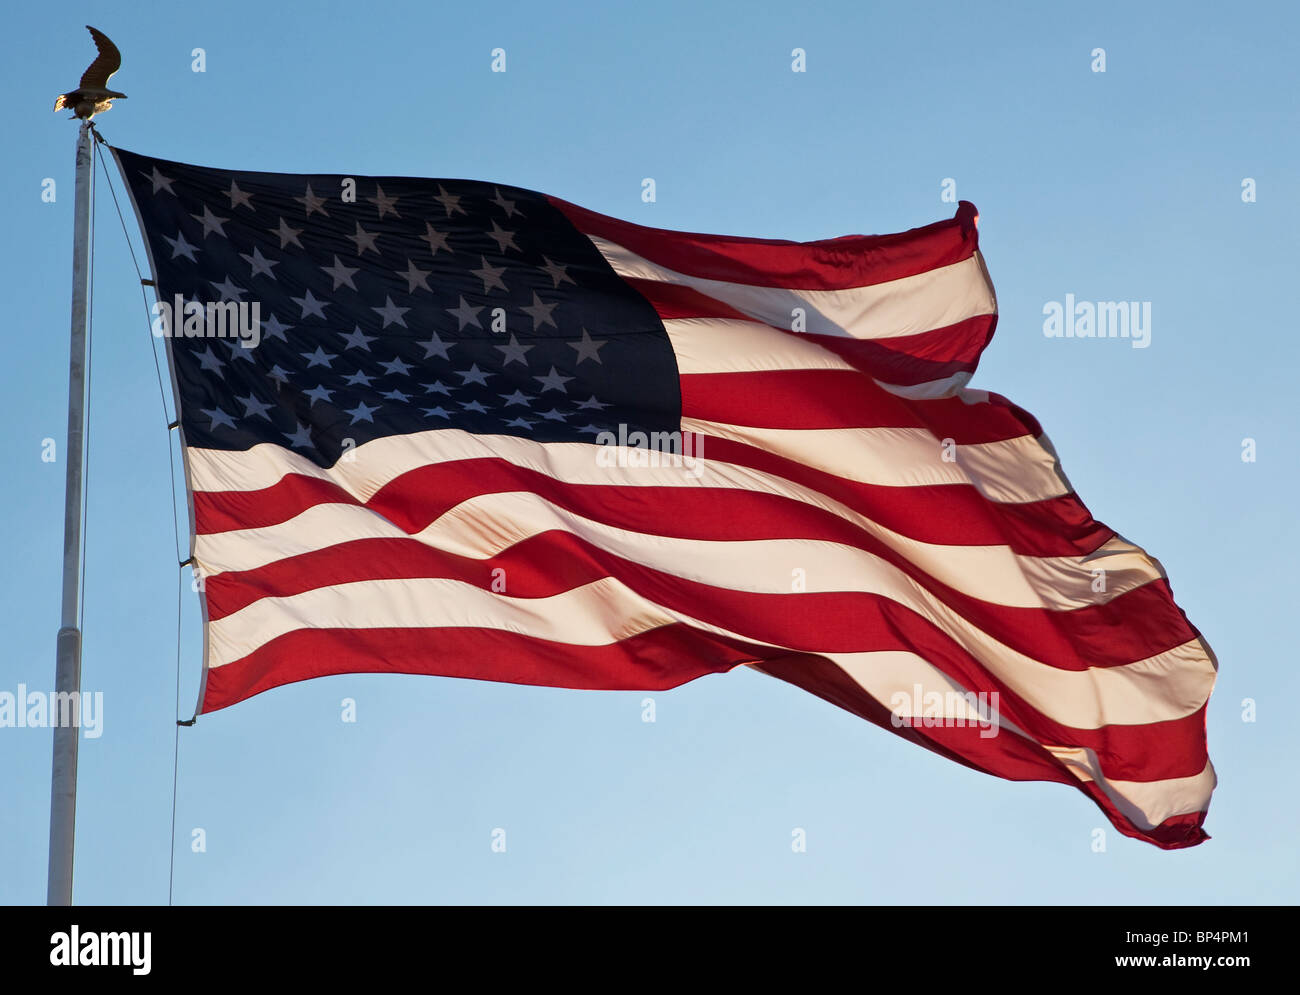 US flag on flagpole Stock Photo